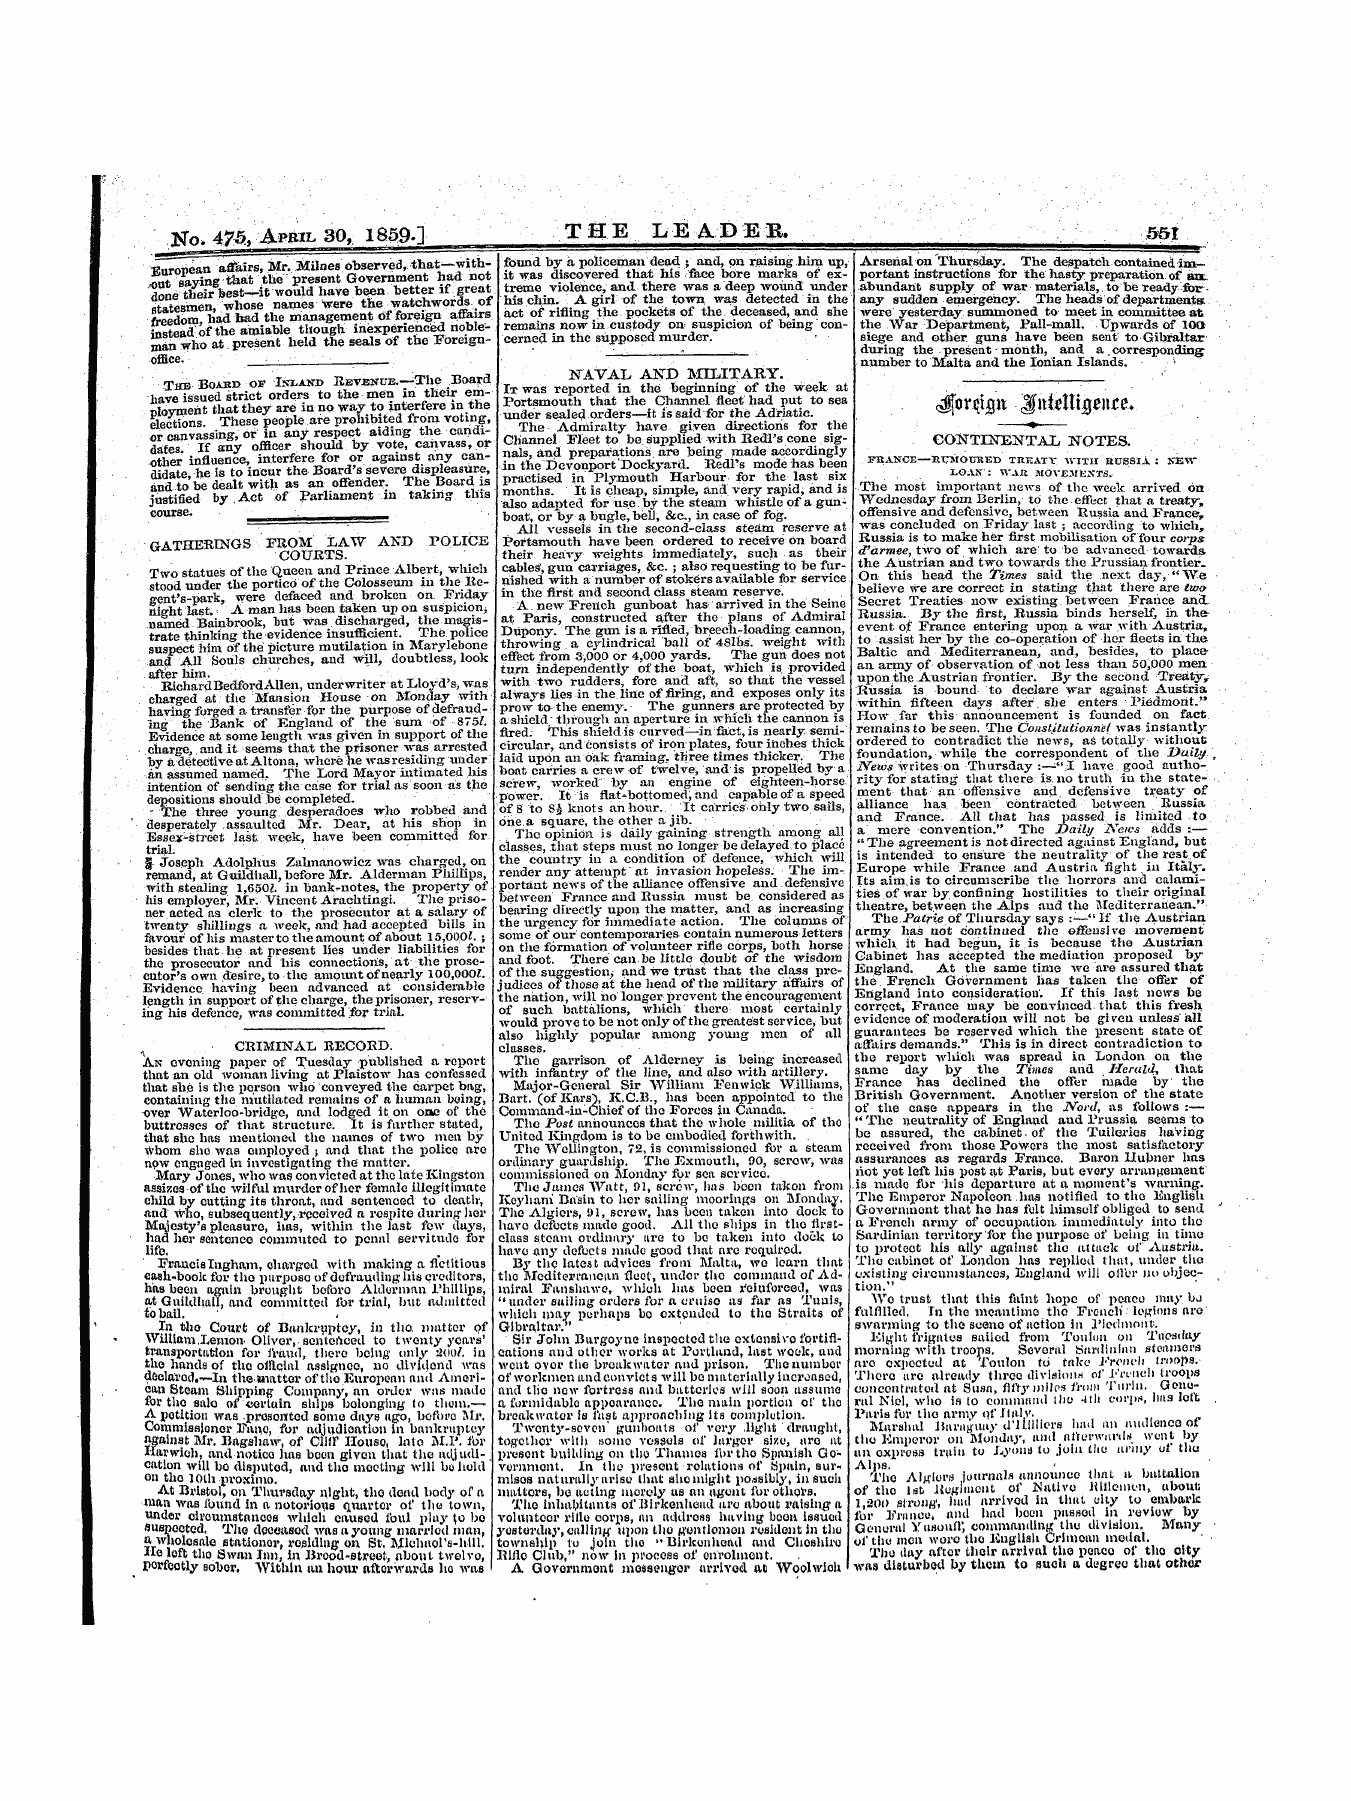 Leader (1850-1860): jS F Y, 1st edition - Jforctmt %M\T «M \ &* ^Uuuijjwjw. »